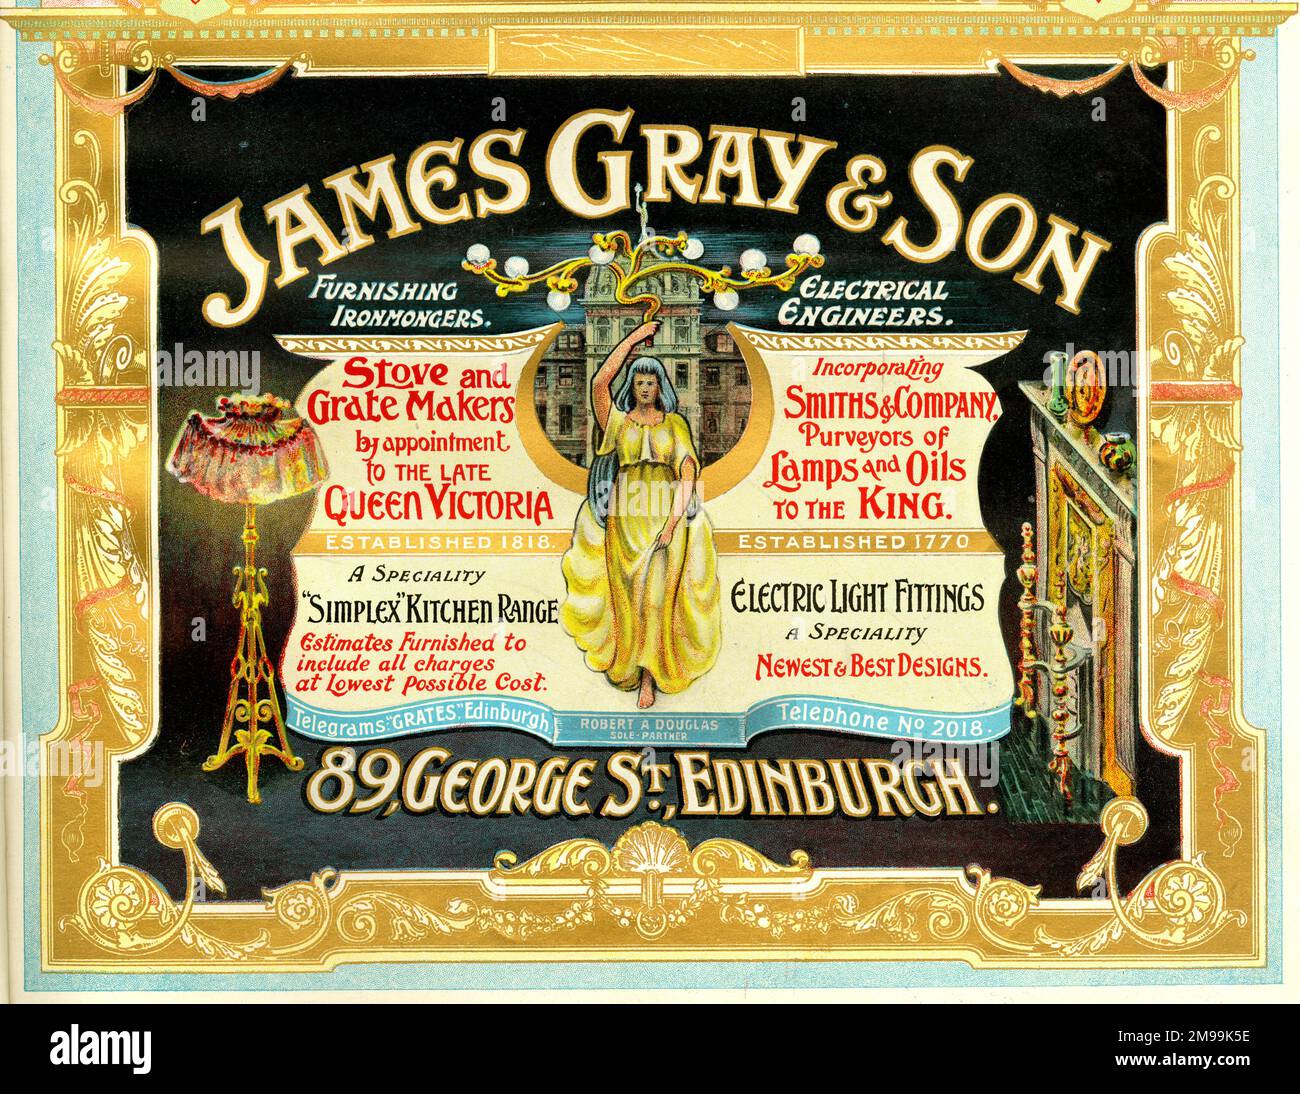 Werbung für James Gray & Son, Herd- und Gittermacher, Küchenherde, elektrische Beleuchtungskörper, George Street, Edinburgh, Schottland. Stockfoto